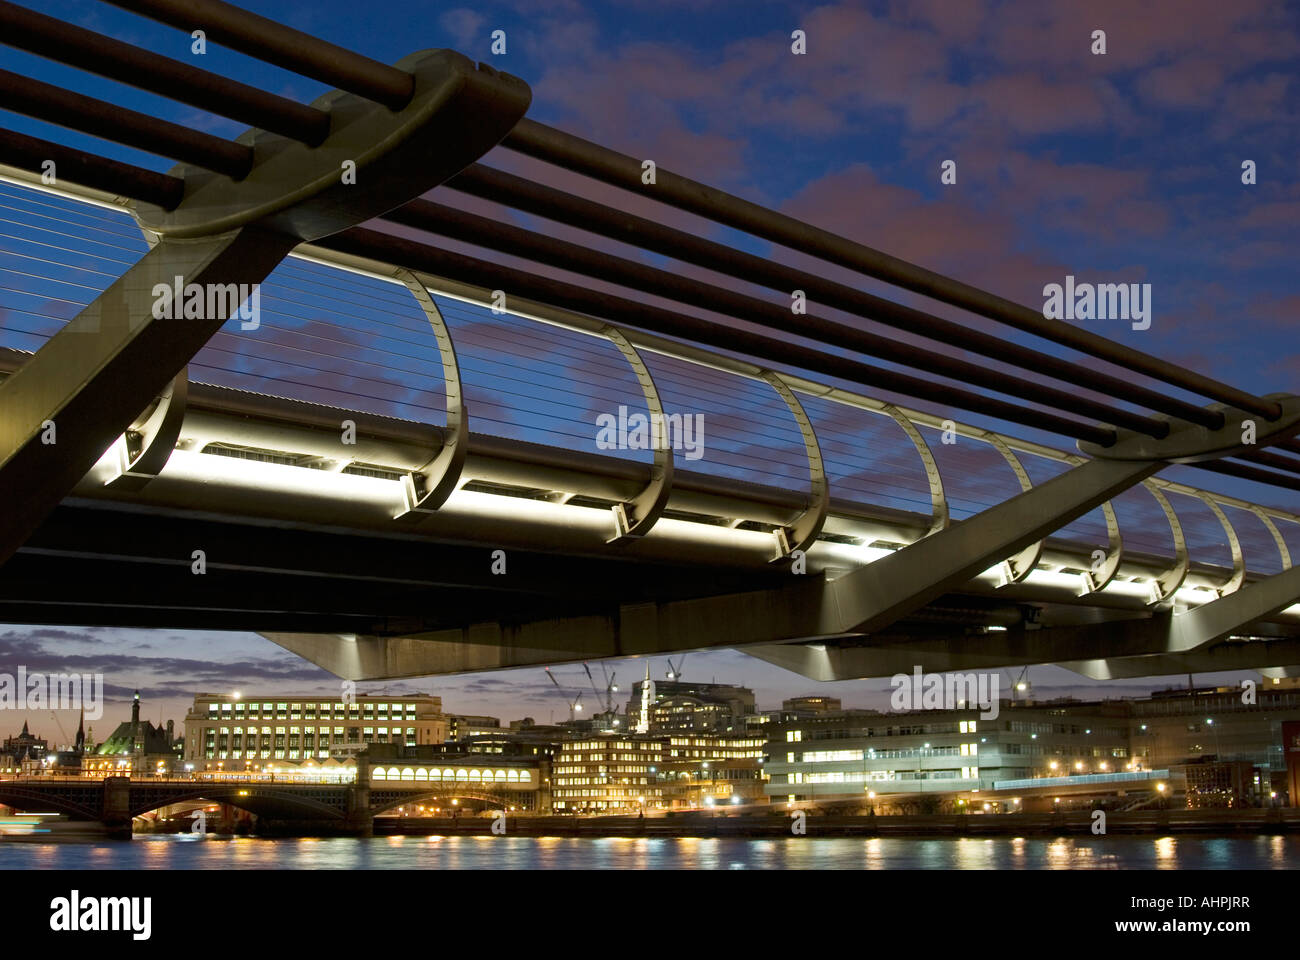 Millenium Bridge at night, London Stock Photo